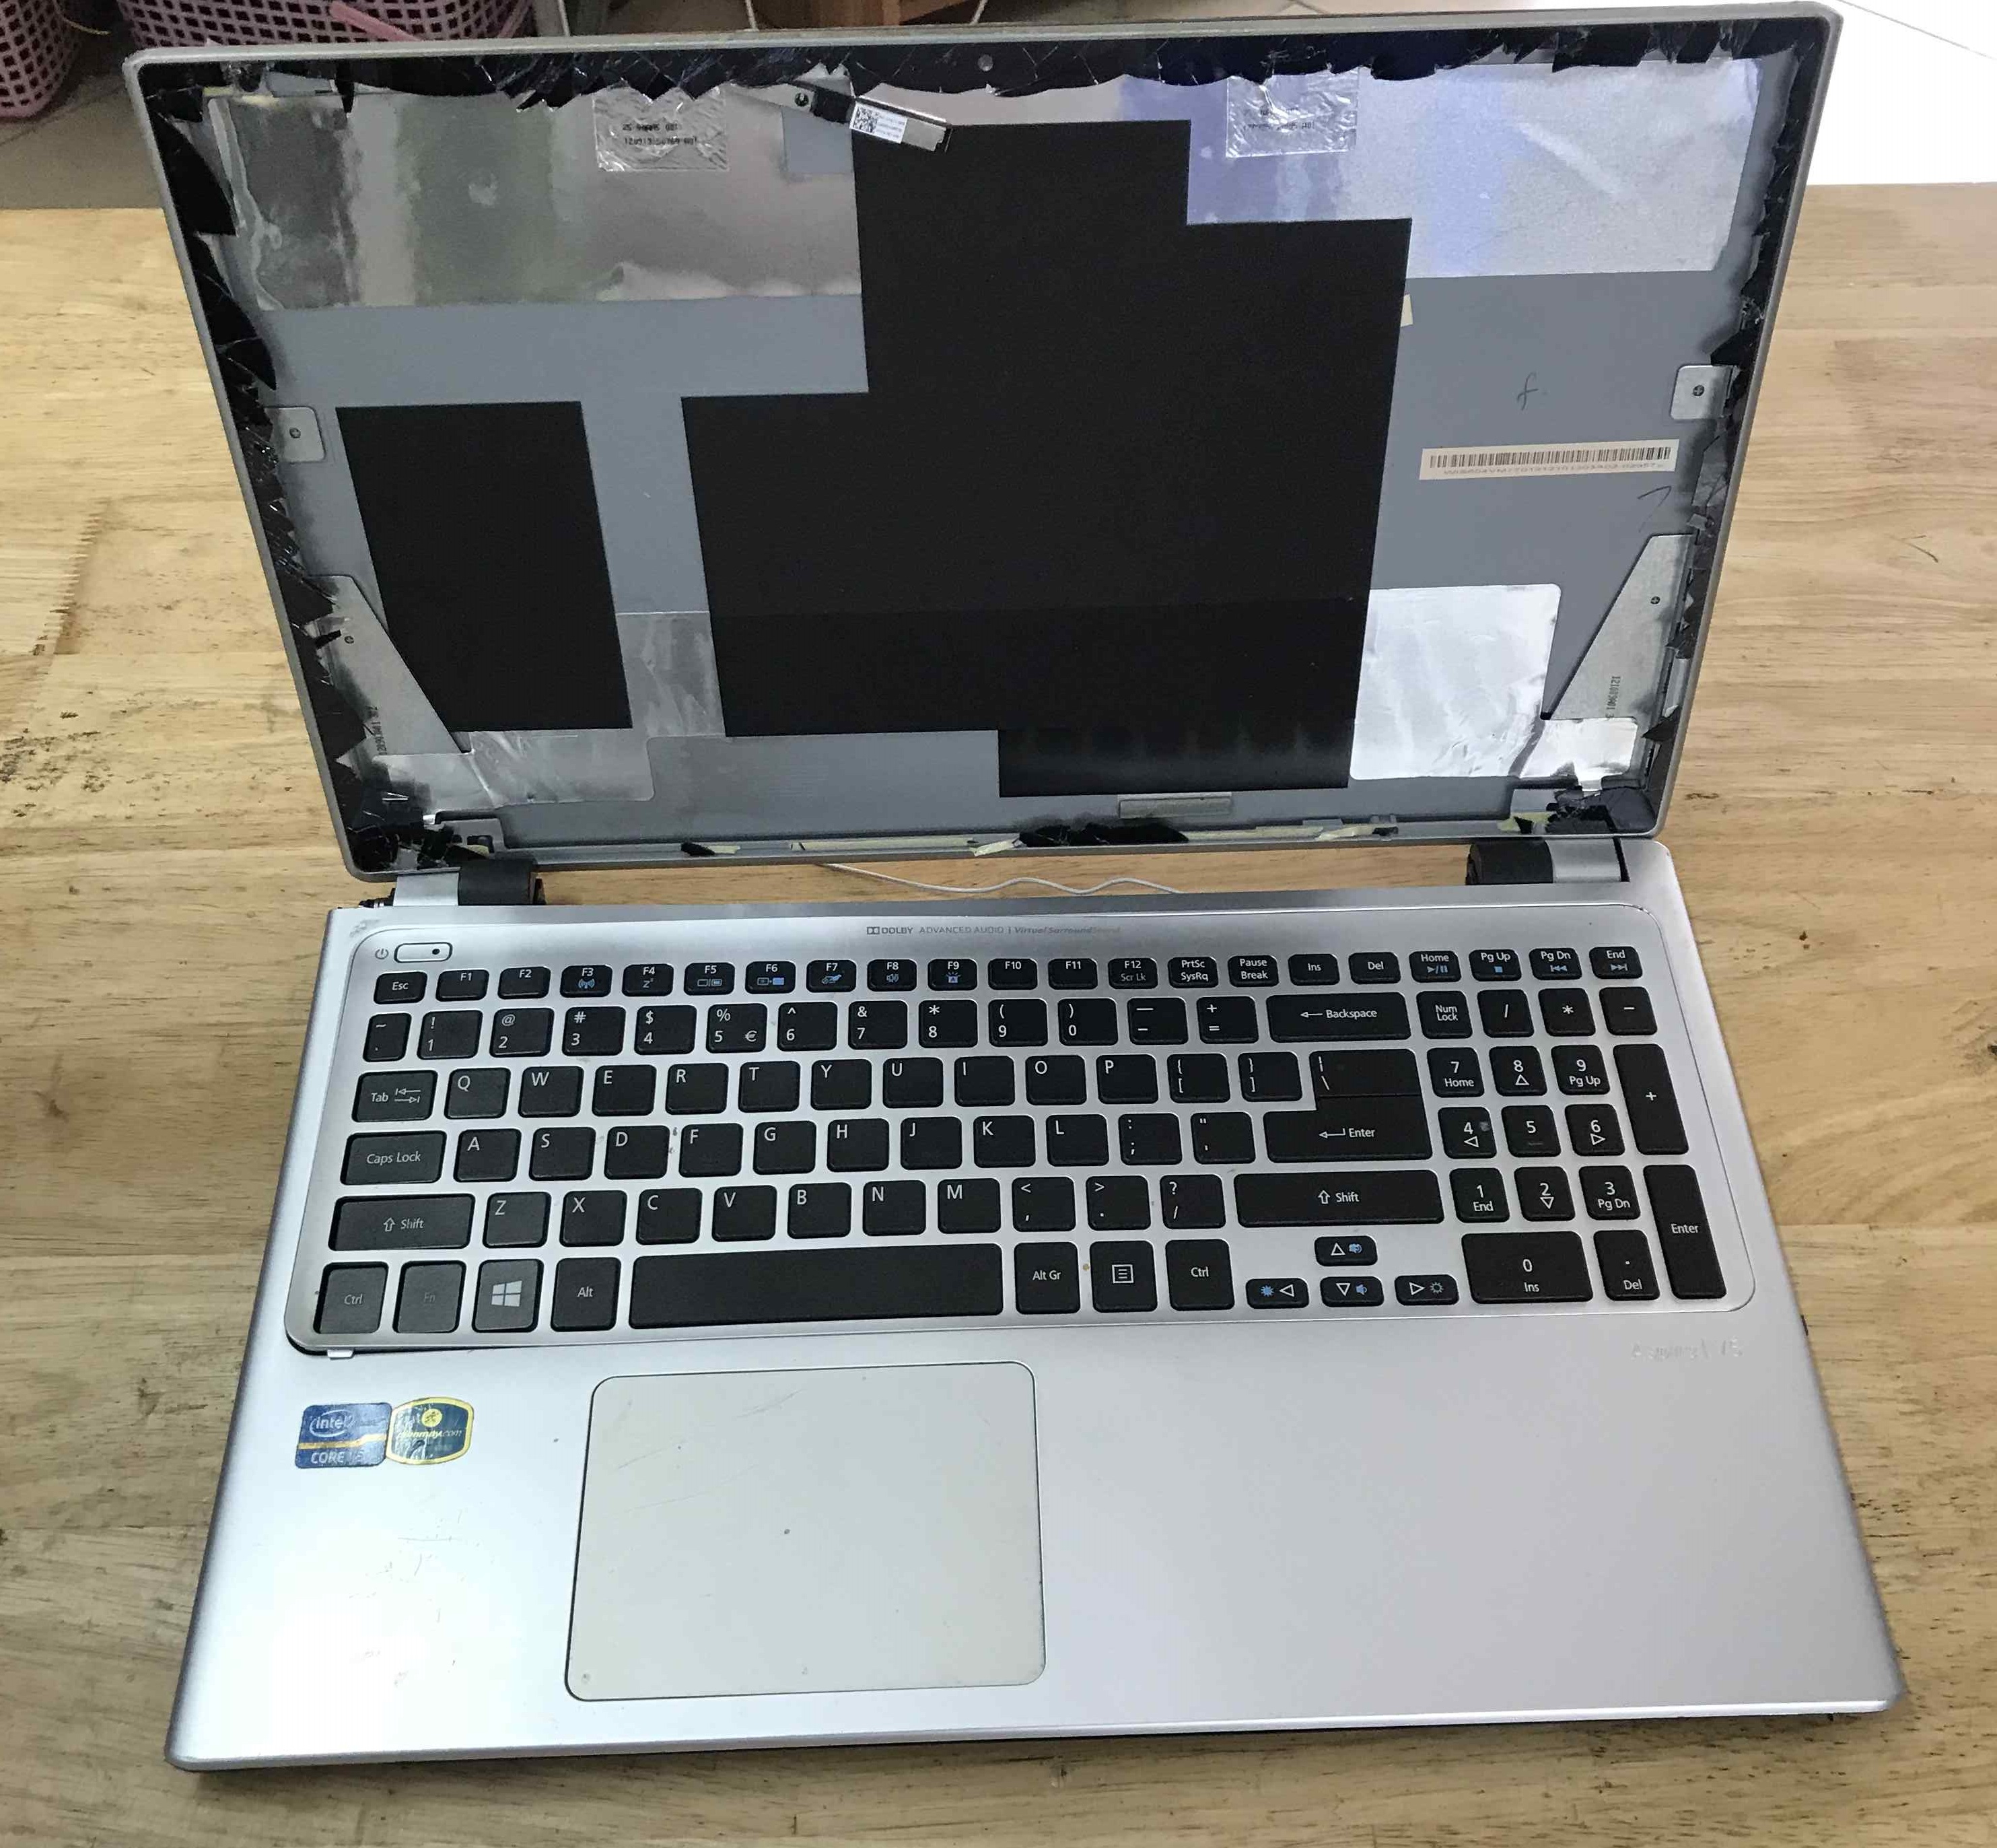 Thay vỏ Laptop cũ Acer V5 - 571 lấy ngay tại Hà Nội